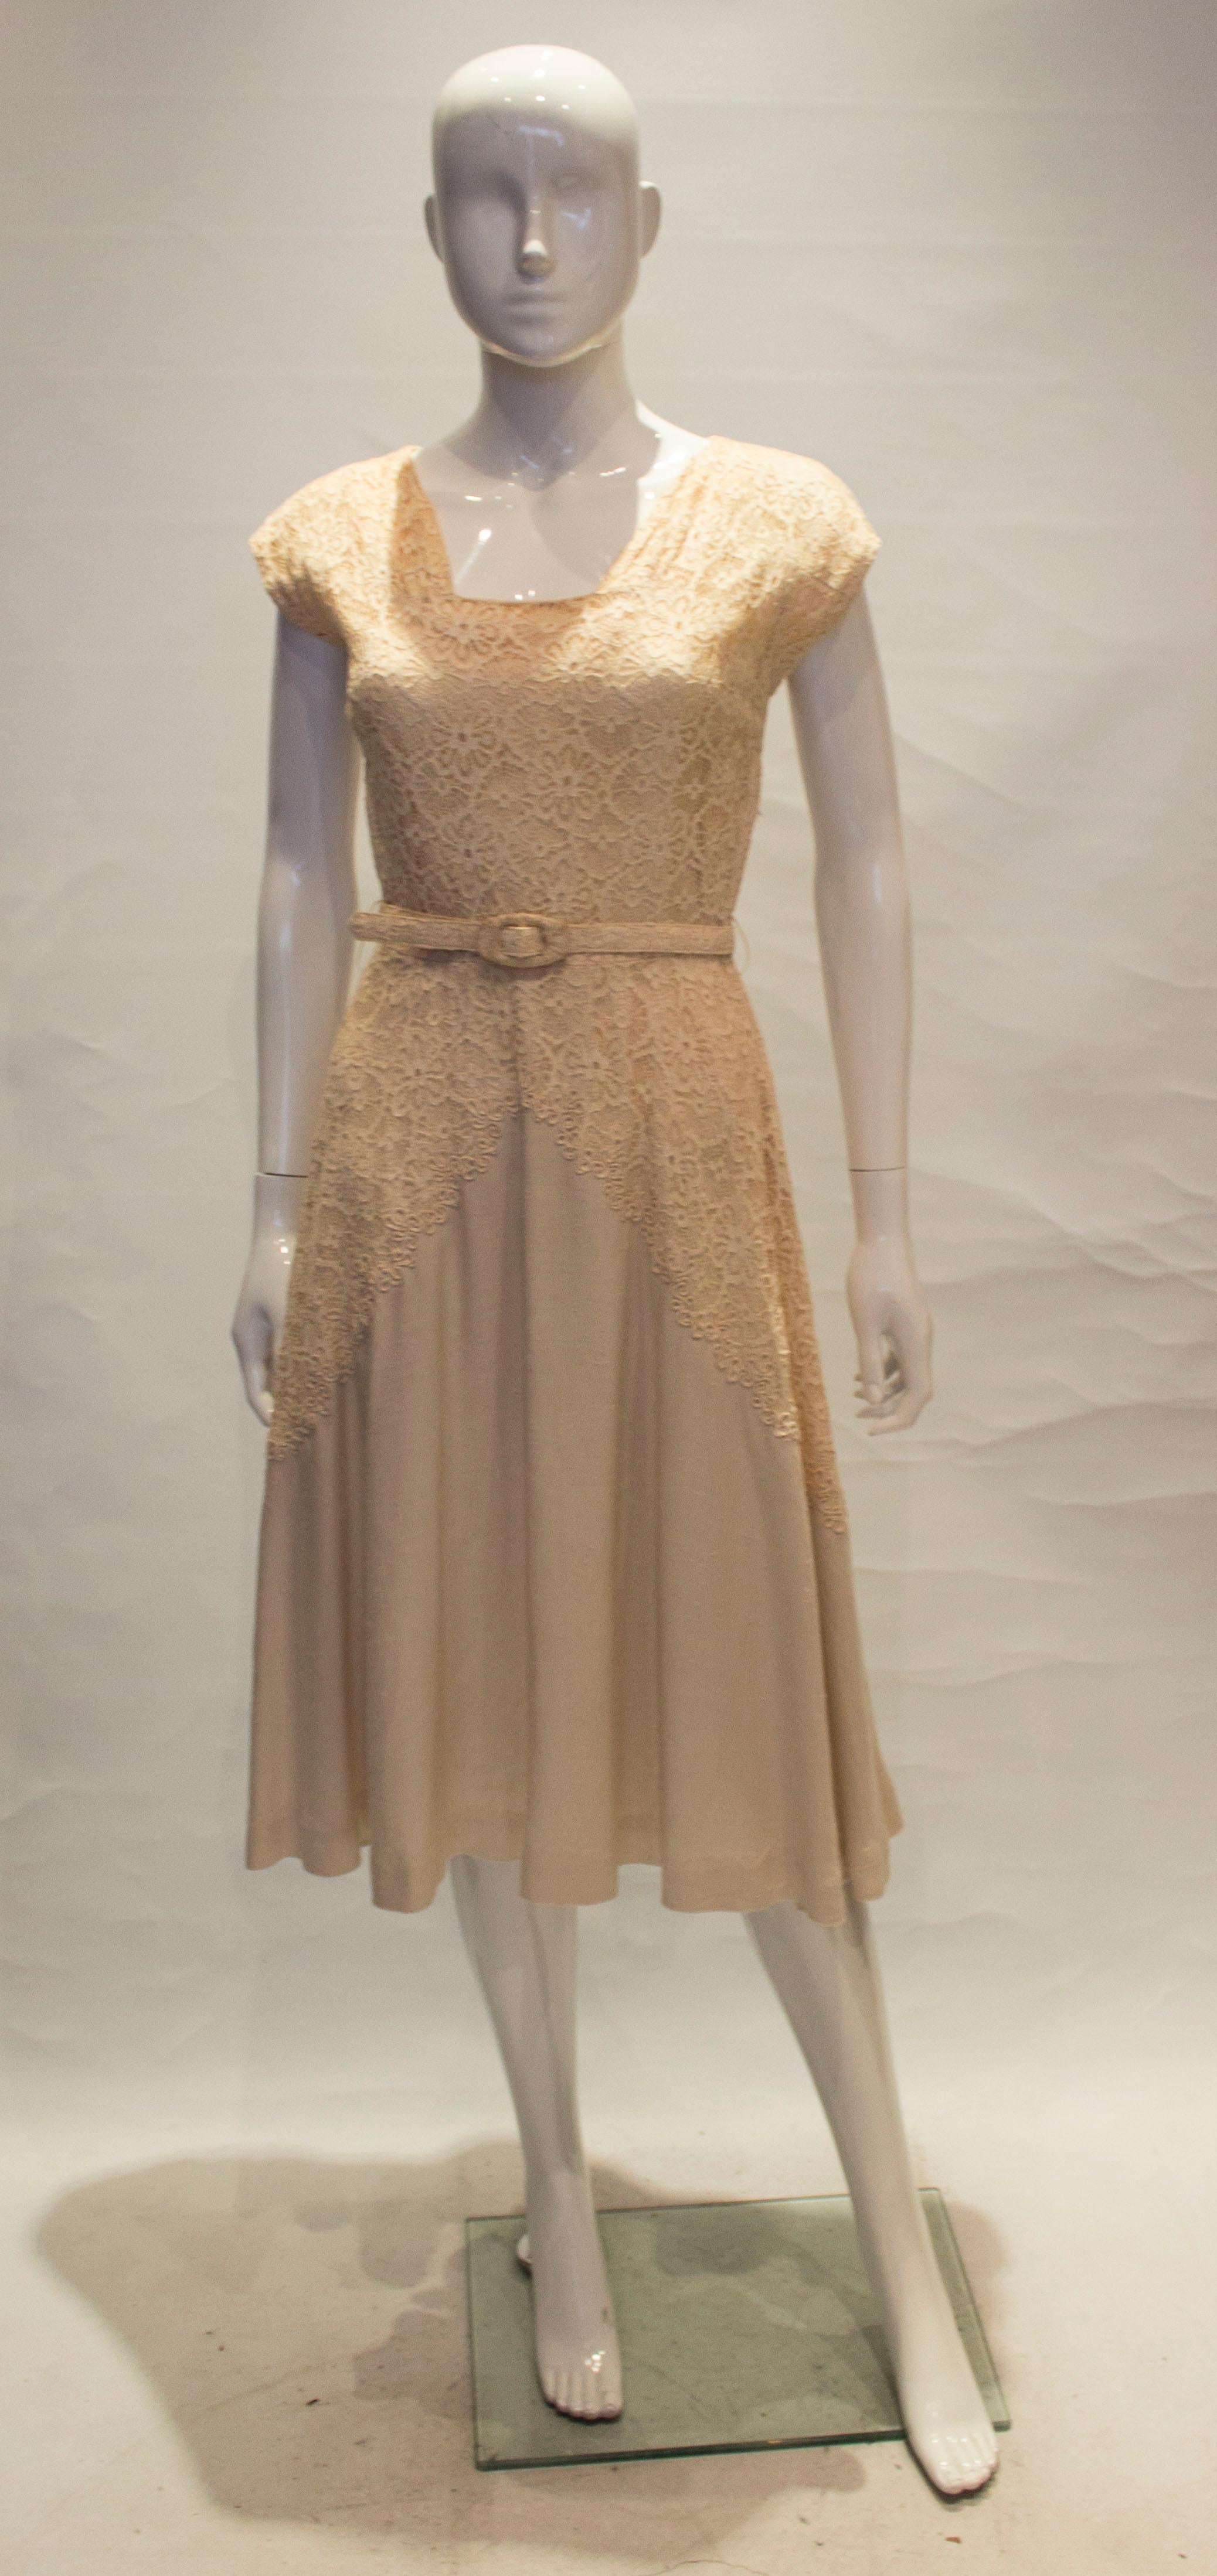 Une jolie robe vintage de Well Made , Londres. La robe a une encolure carrée, et des détails en dentelle sur le devant et le dos. Elle a une ceinture en tissu, une jupe complète et est partiellement doublée.

